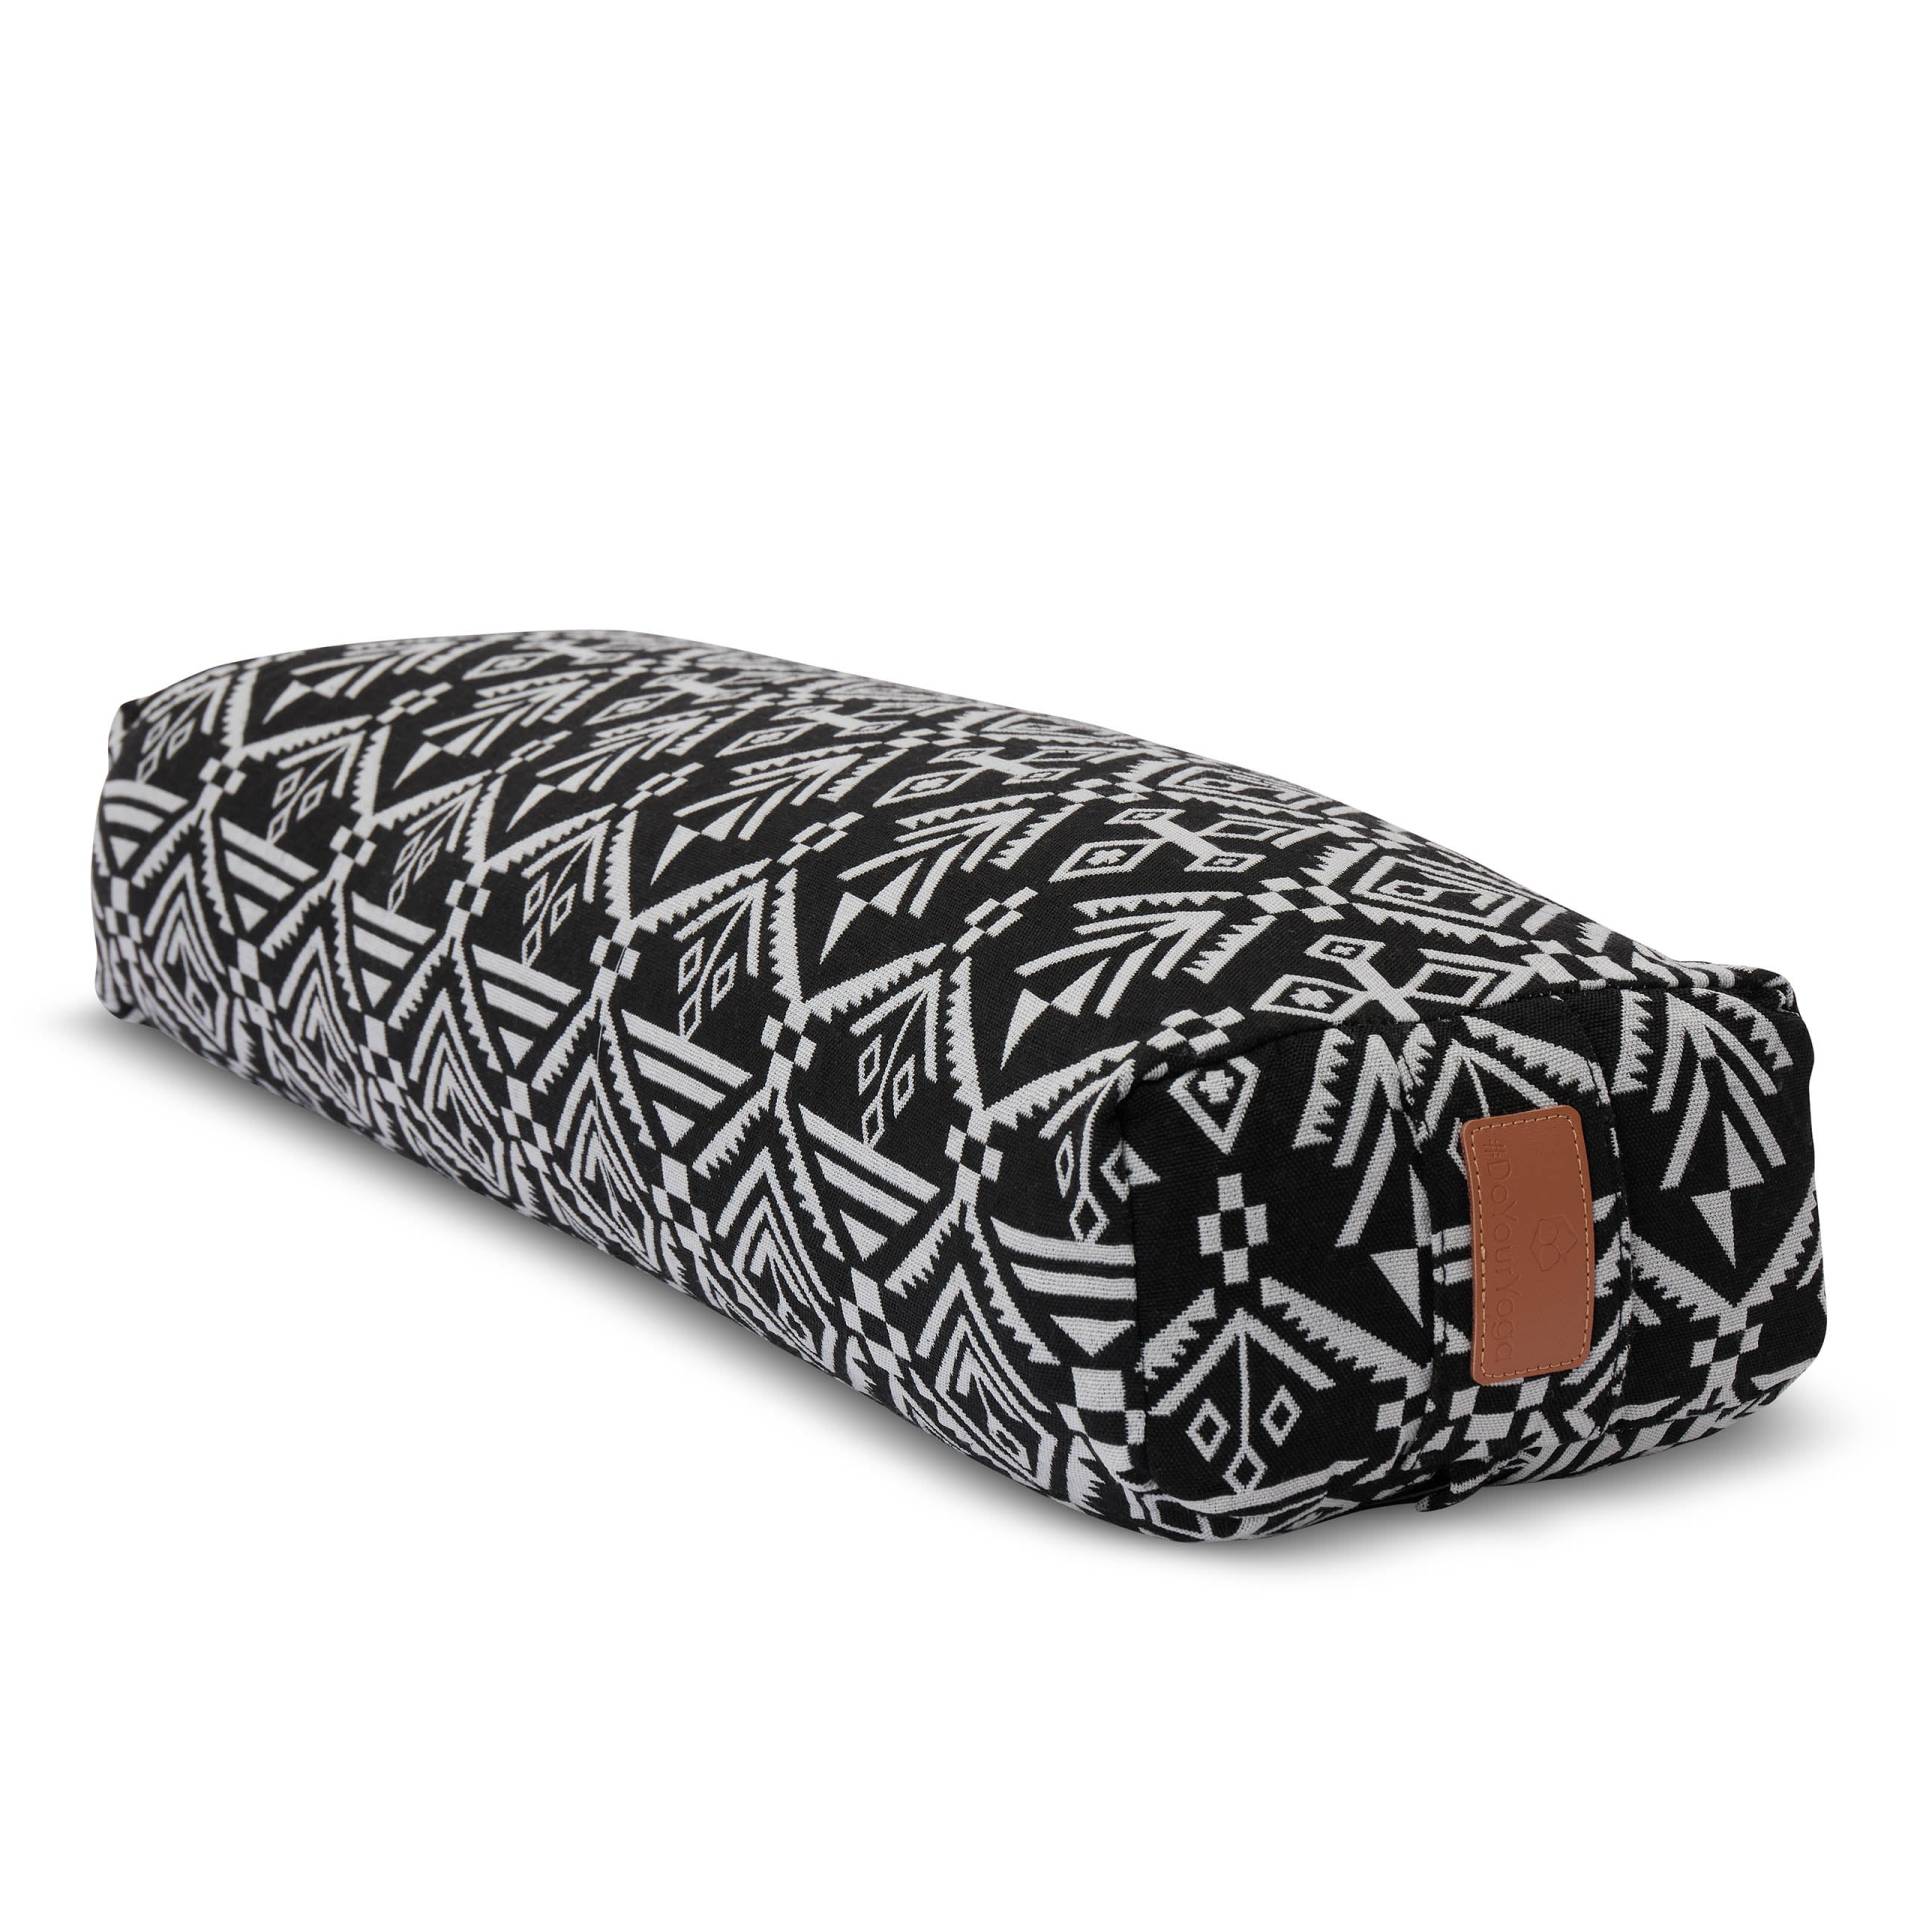 Yoga-Bolster Paravati - gefüllt mit Bio-Dinkelspelz - 67 x 22 x 13 cm - Style 7 (Schwarz-Weiß) von #DoYourYoga